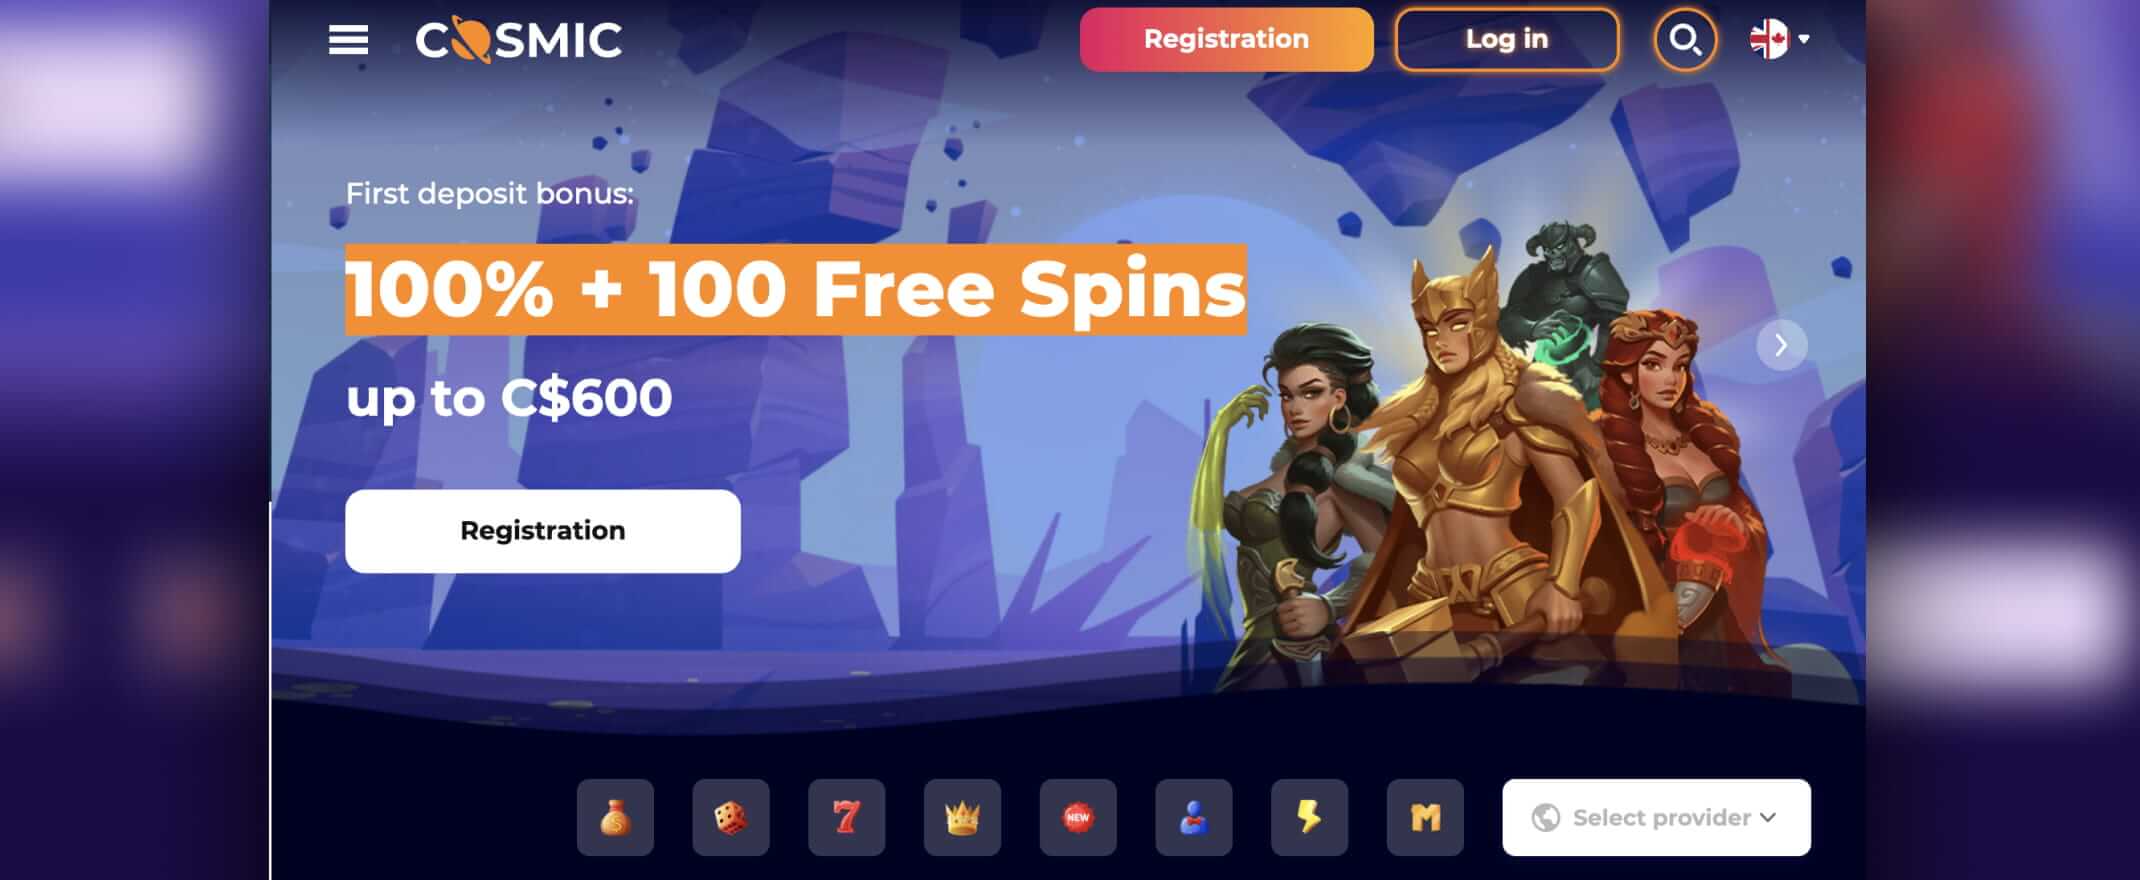 CosmicSlot Casino homepage screenshot